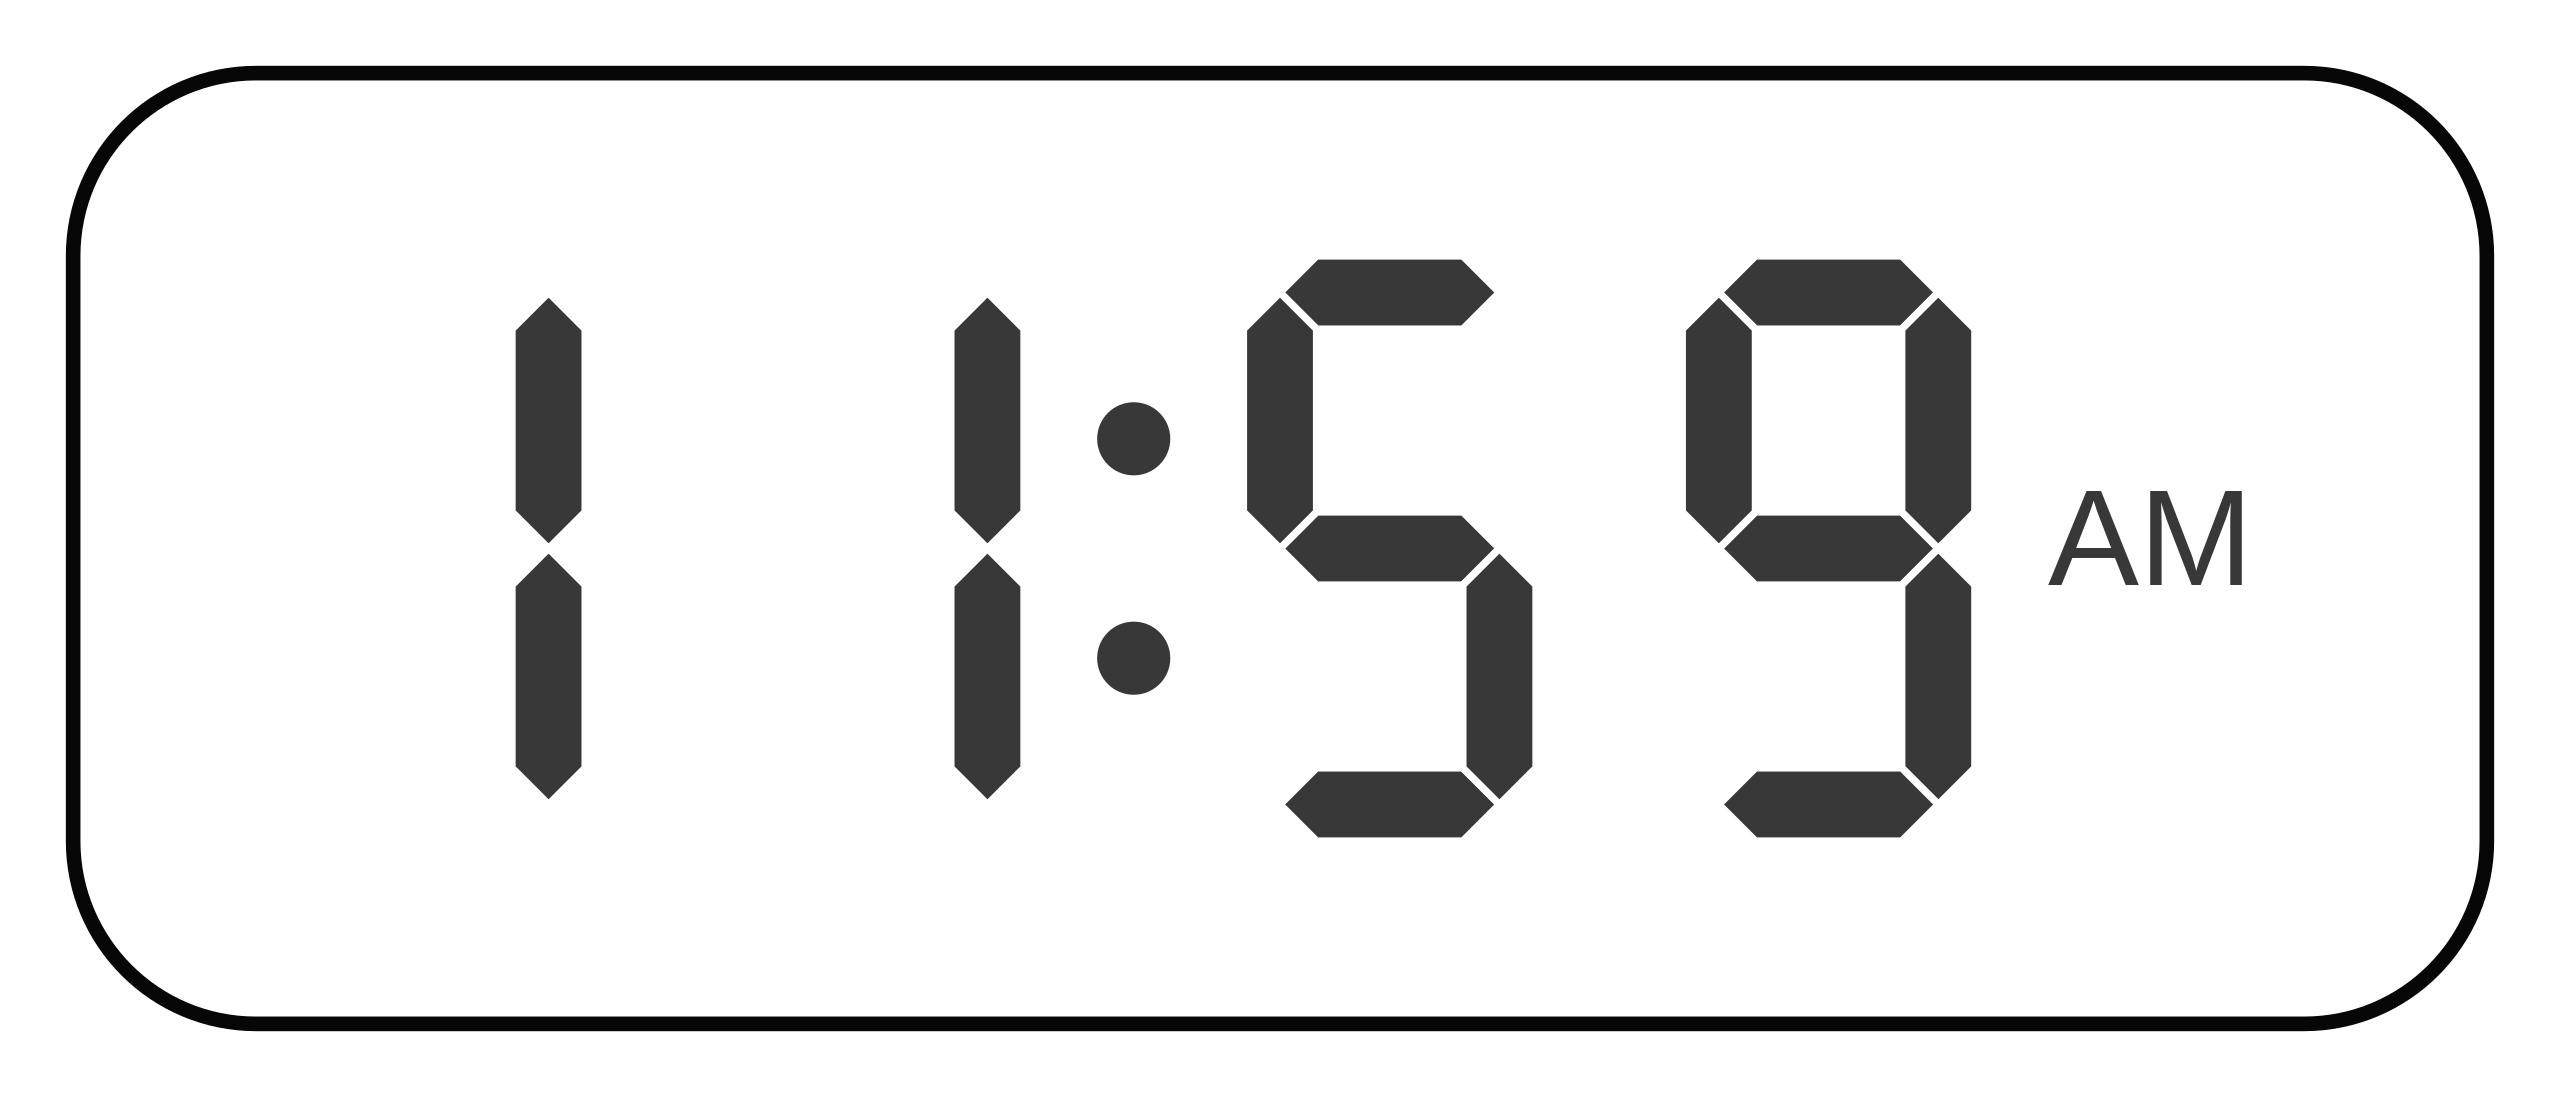 capturar código Morse Anónimo Archivo:Reloj digital 1159am.svg - Wikipedia, la enciclopedia libre